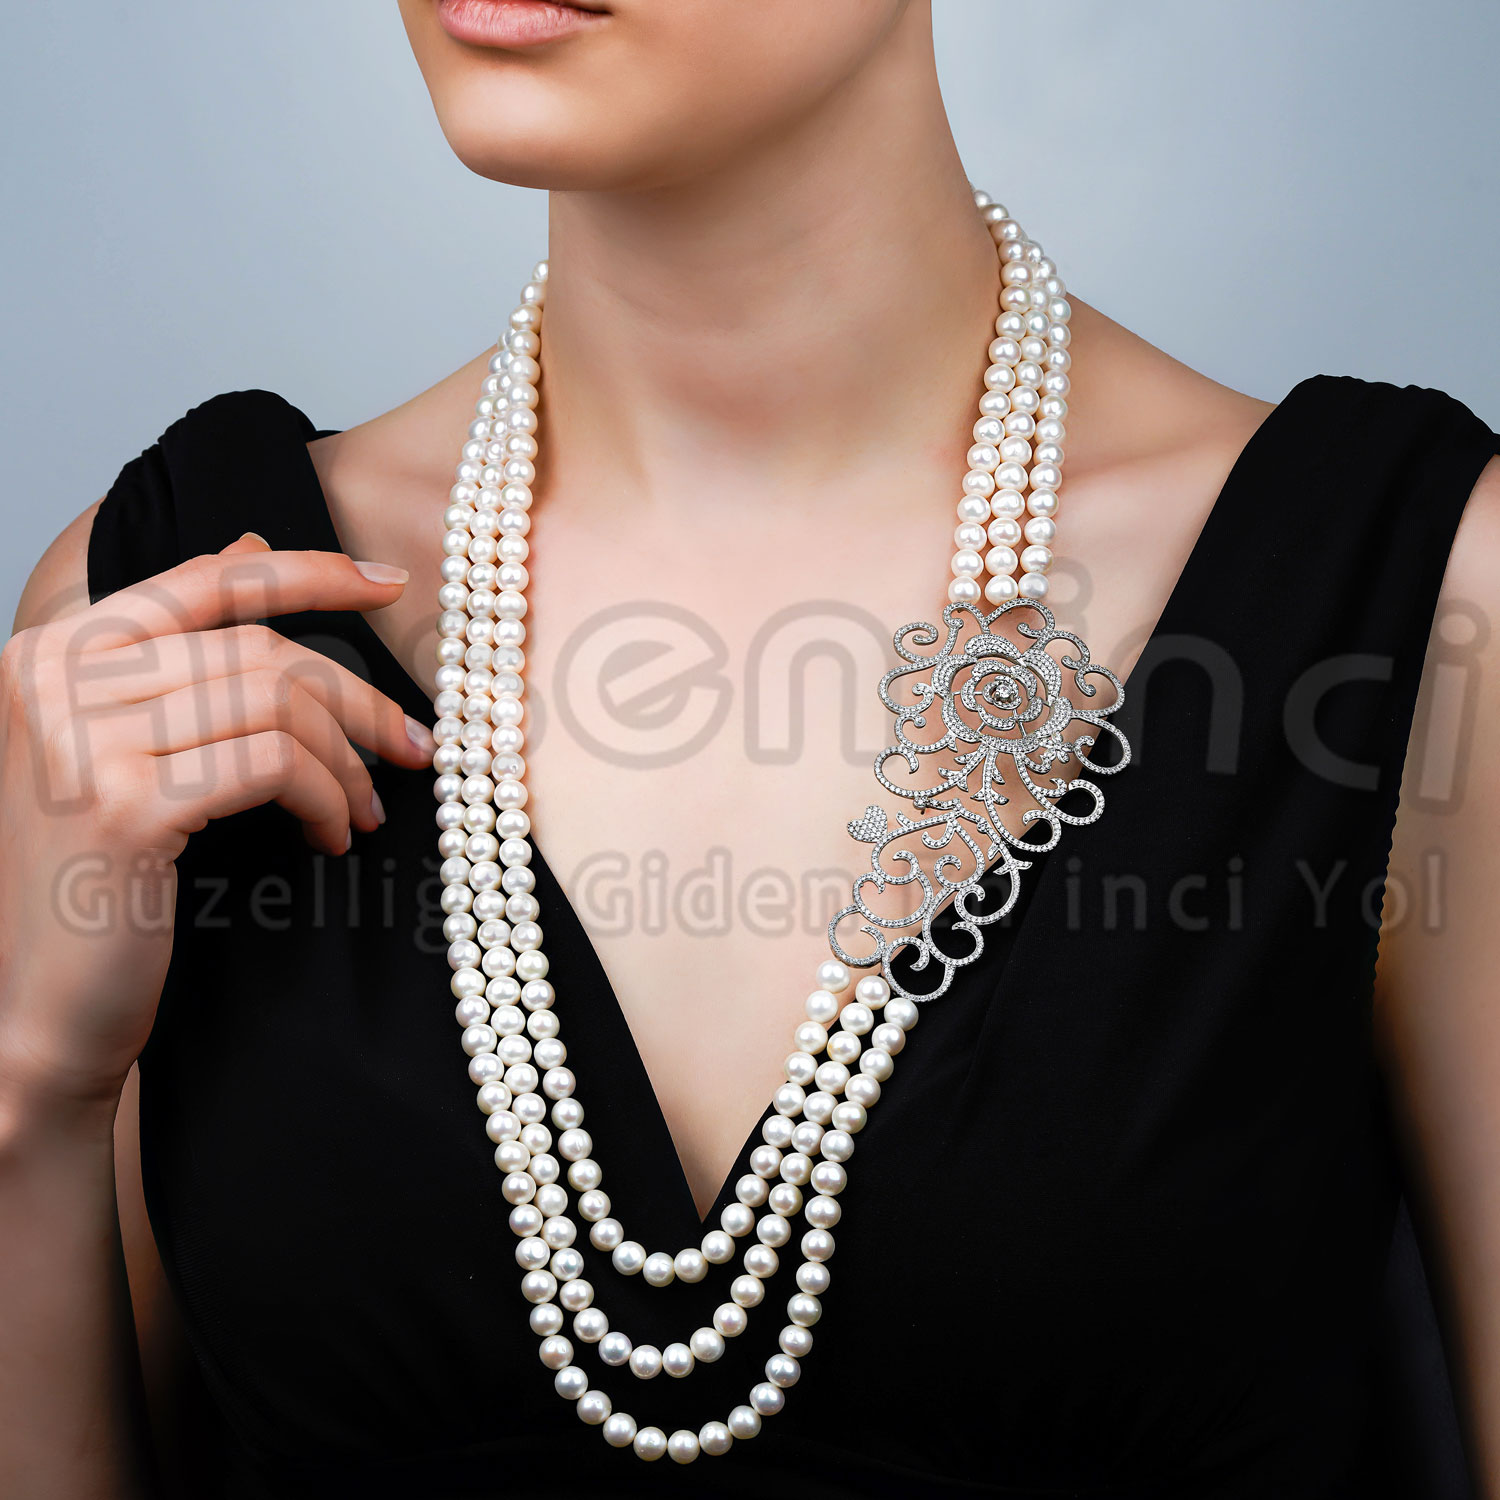 4-Reihige Natürliche Perlenkette mit Silberbrosche AH-0109 - 1